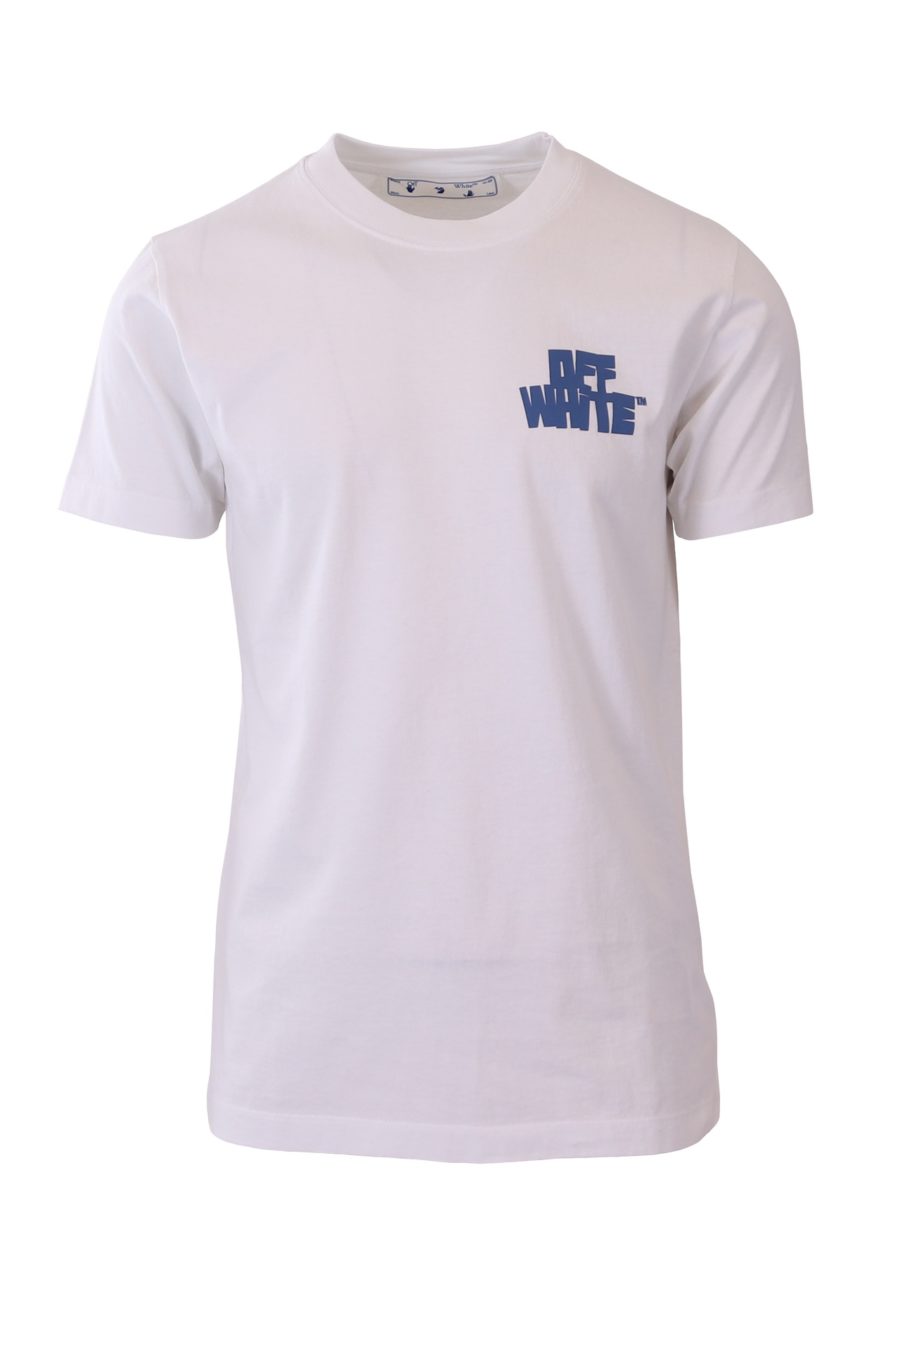 Camiseta Off-White blanca estampado azul - 0505ba4dc0632876082a1700eb5faed2a08eabec